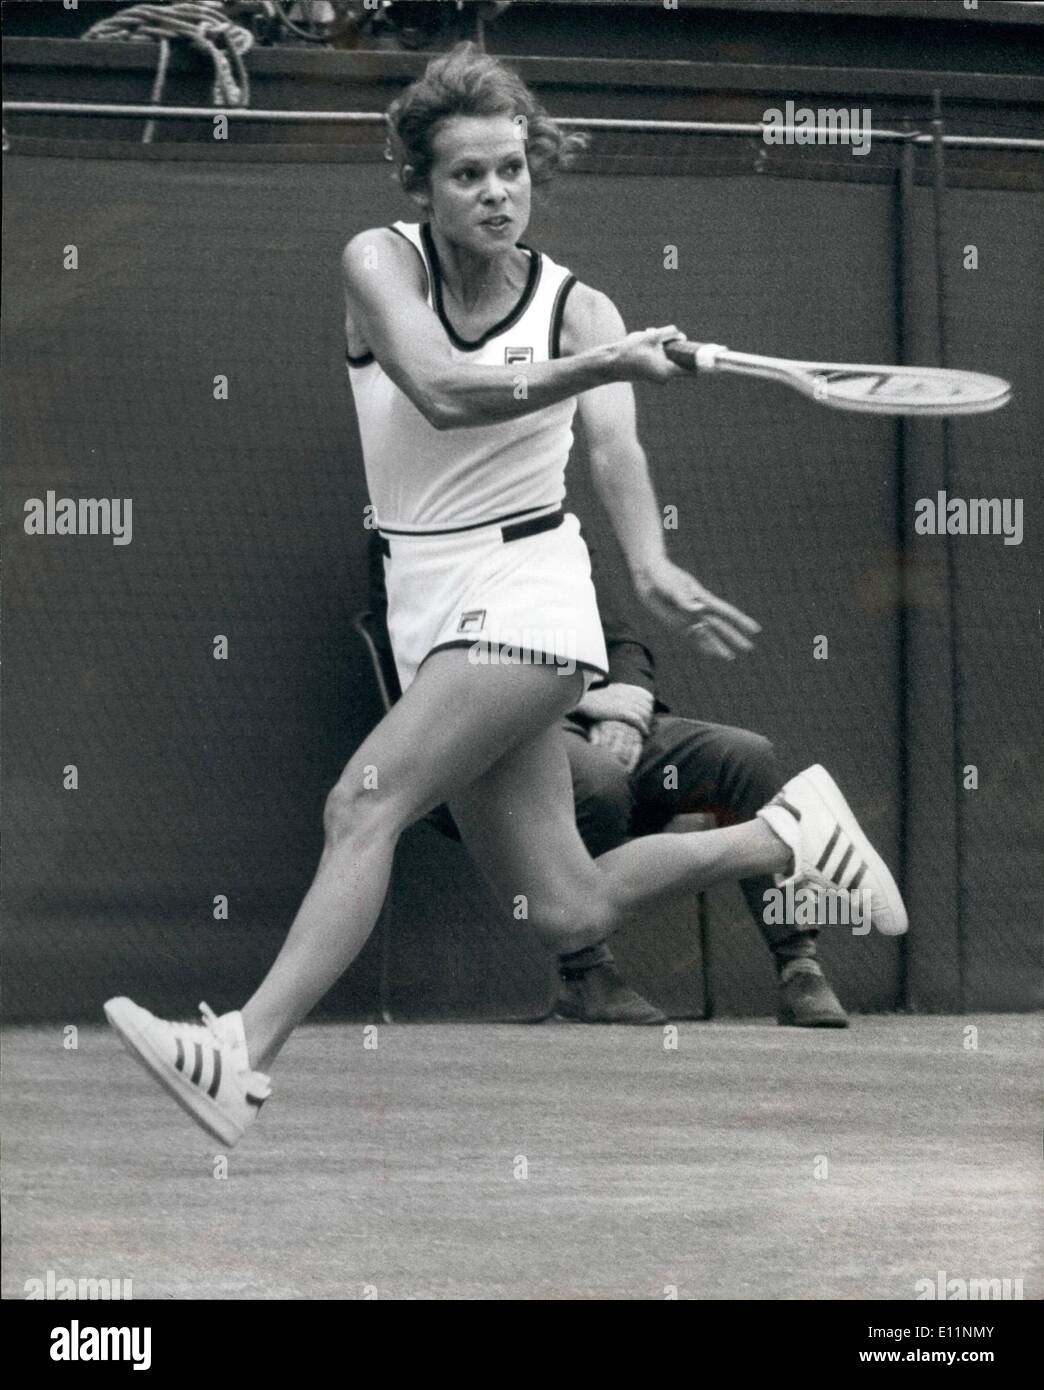 Lug. 07, 1979 - i battenti Aussie: onorevole Evonne Cawley ha avuto una partenza bruciante in tutti i suoi giochi in questo anni campionati di Wimbledon. Ieri lei thashed Virginia Wade il britannico n. 1 6-4 6-0. Ella ow gioca Chris Lloyd in semi-finale. Foto Stock